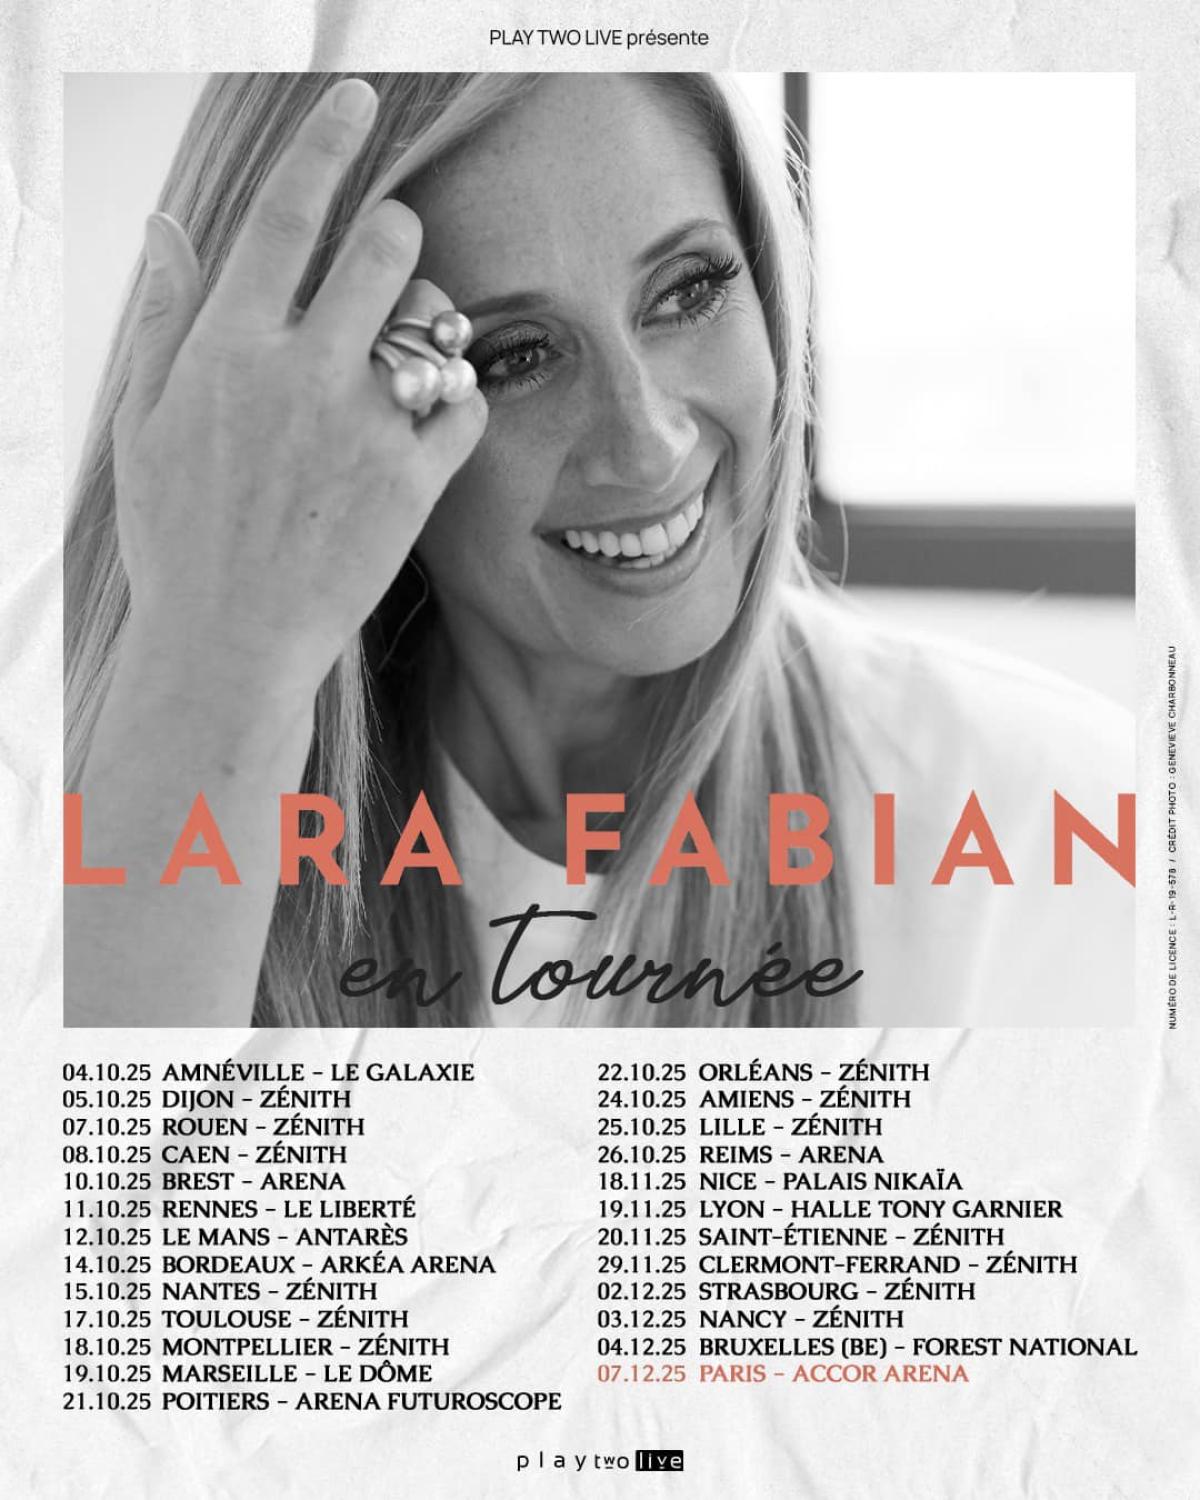 Lara Fabian at Zenith Caen Tickets